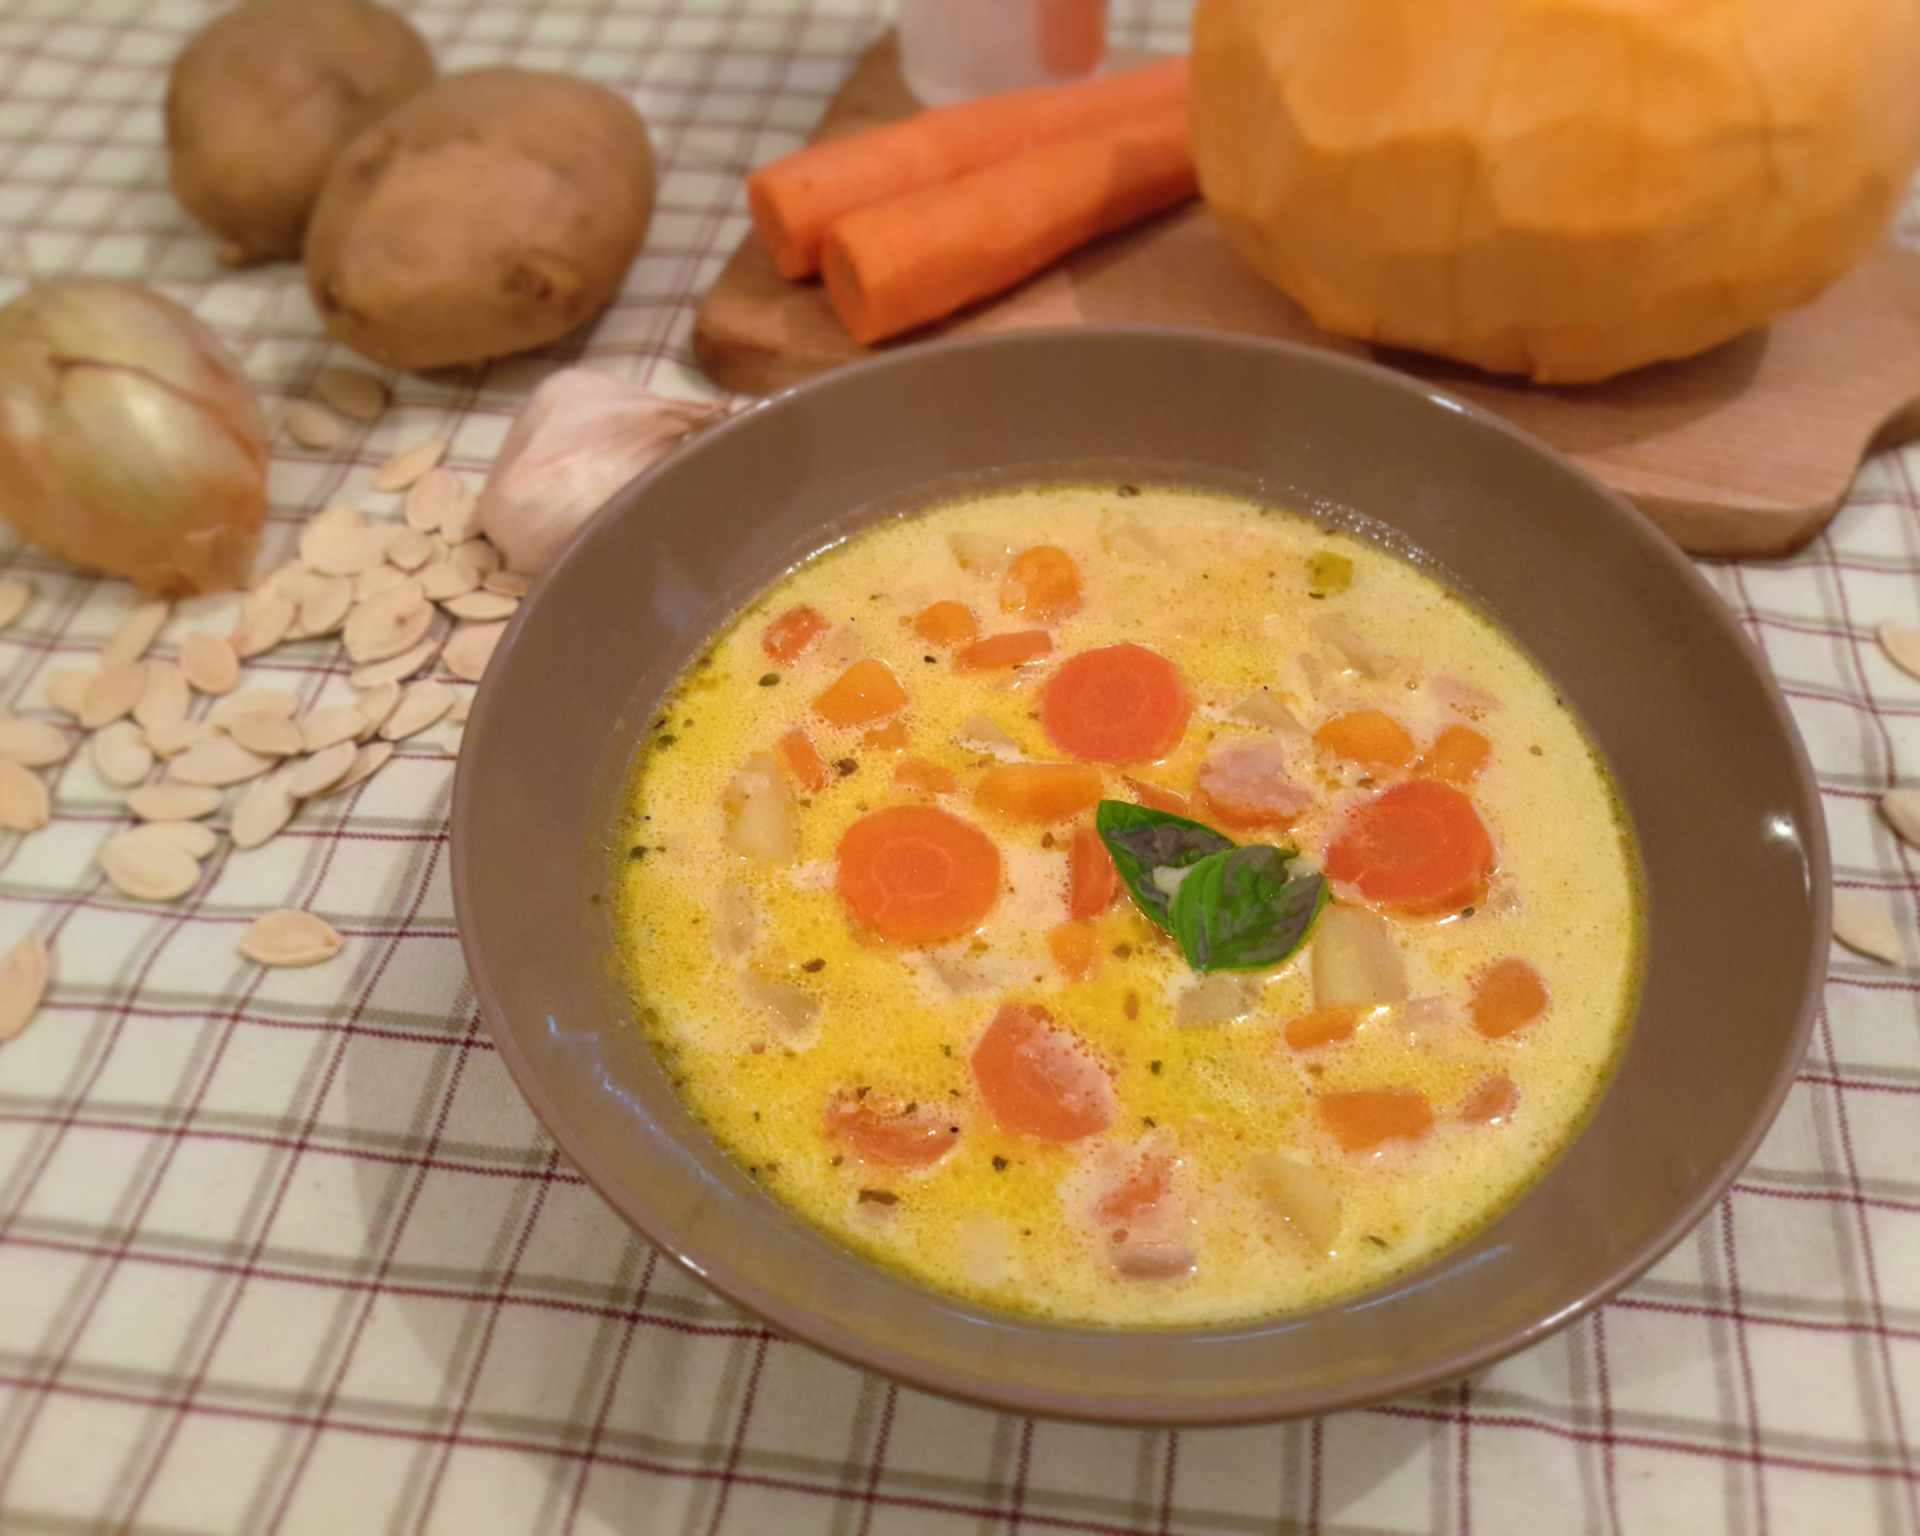 Smotanová polievka s mrkvou, oranžovou tekvicou, červenou šošovicou a zemiakmi